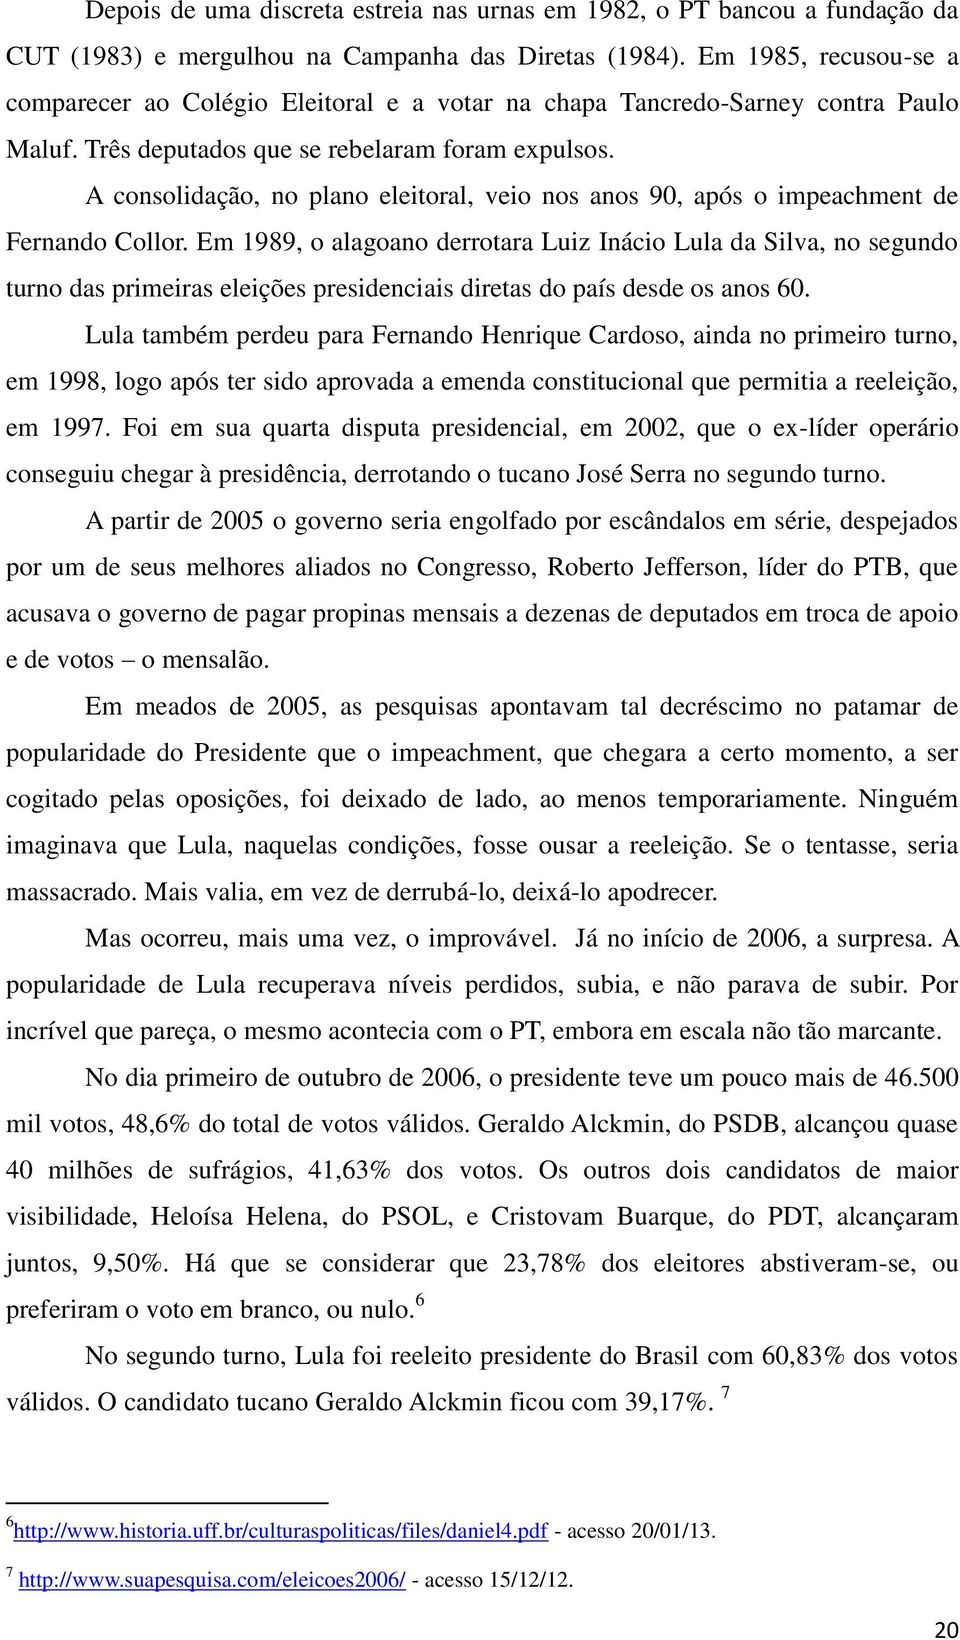 A consolidação, no plano eleitoral, veio nos anos 90, após o impeachment de Fernando Collor.